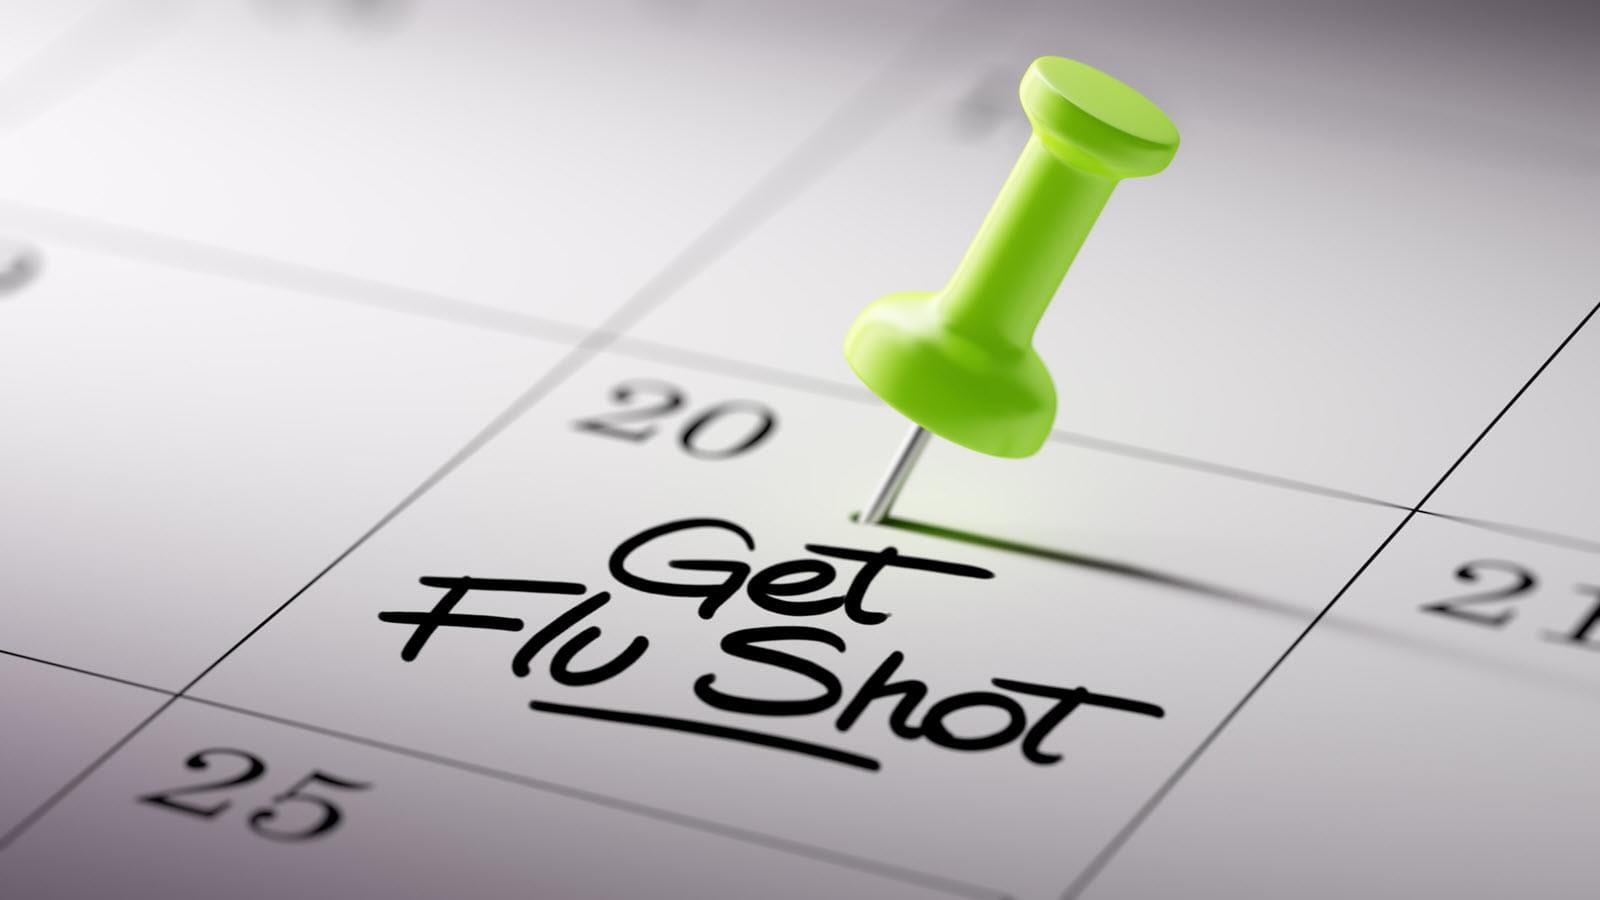 Get flu shot written on calendar page